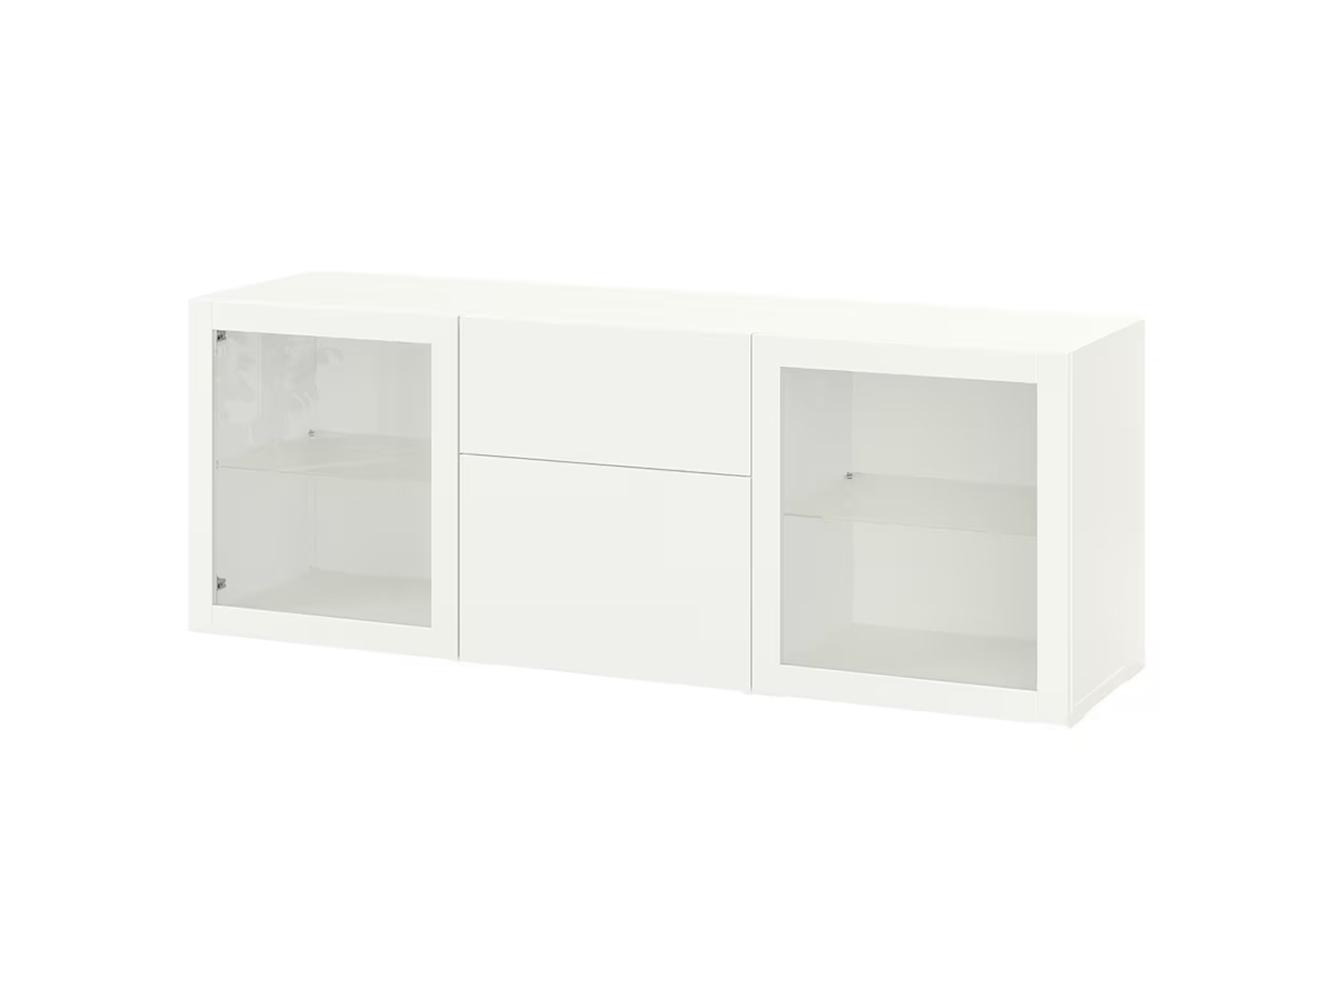 Буфет Беста 315 white ИКЕА (IKEA) изображение товара